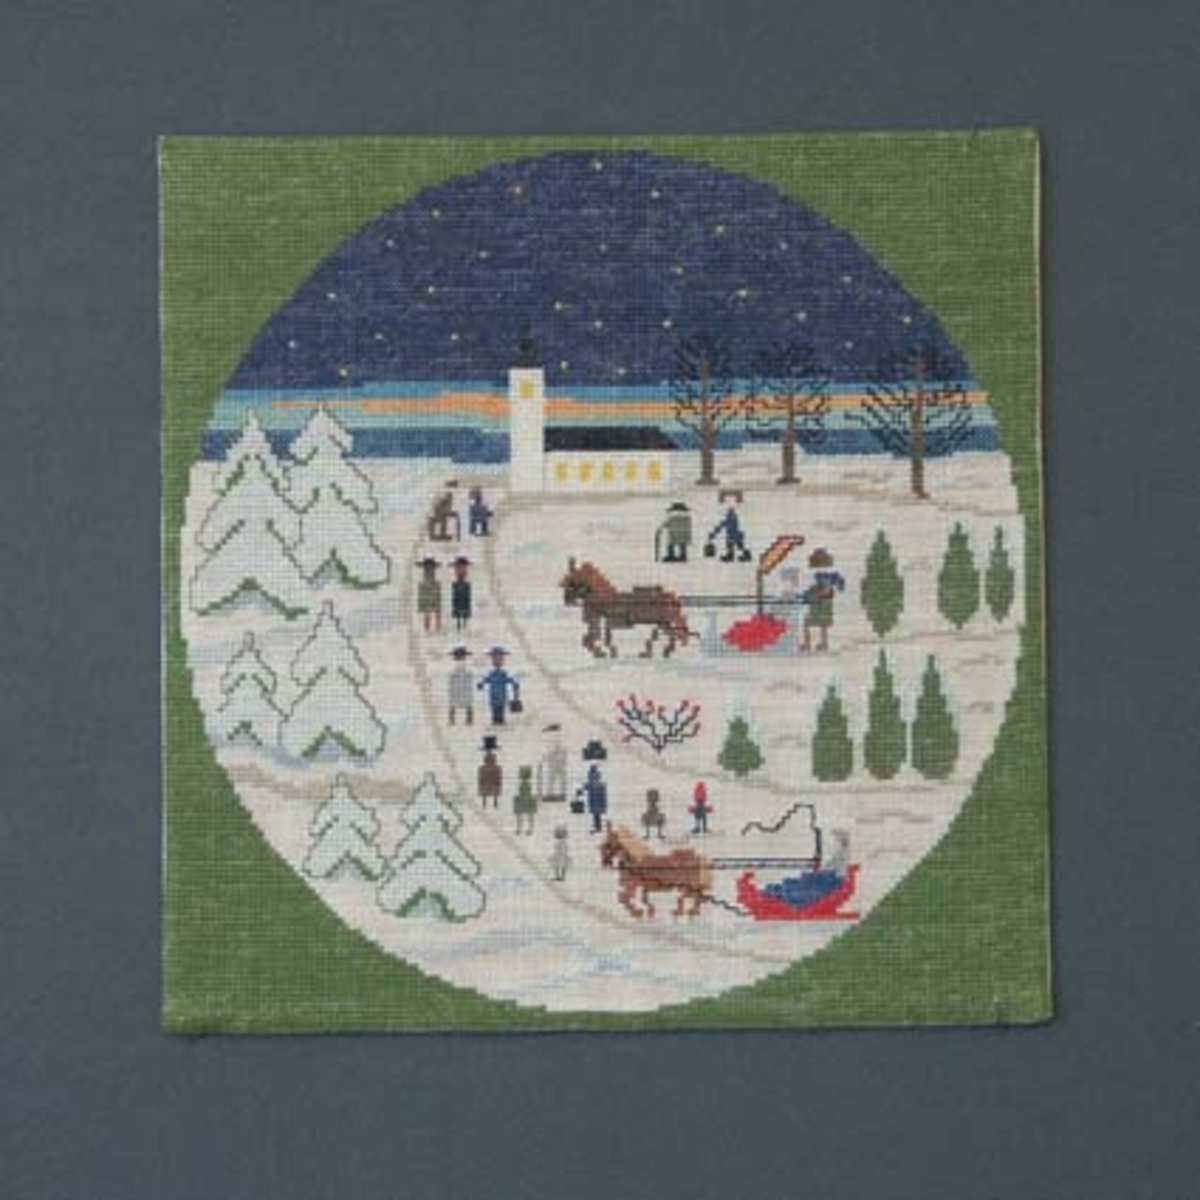 Julbonad med korsstygnsbroderi på linneväv. Bonaden tillhör Runda serien som är en serie julbonader formgivna av Irma Kronlund, en bonad per år från 1971 till 1989.